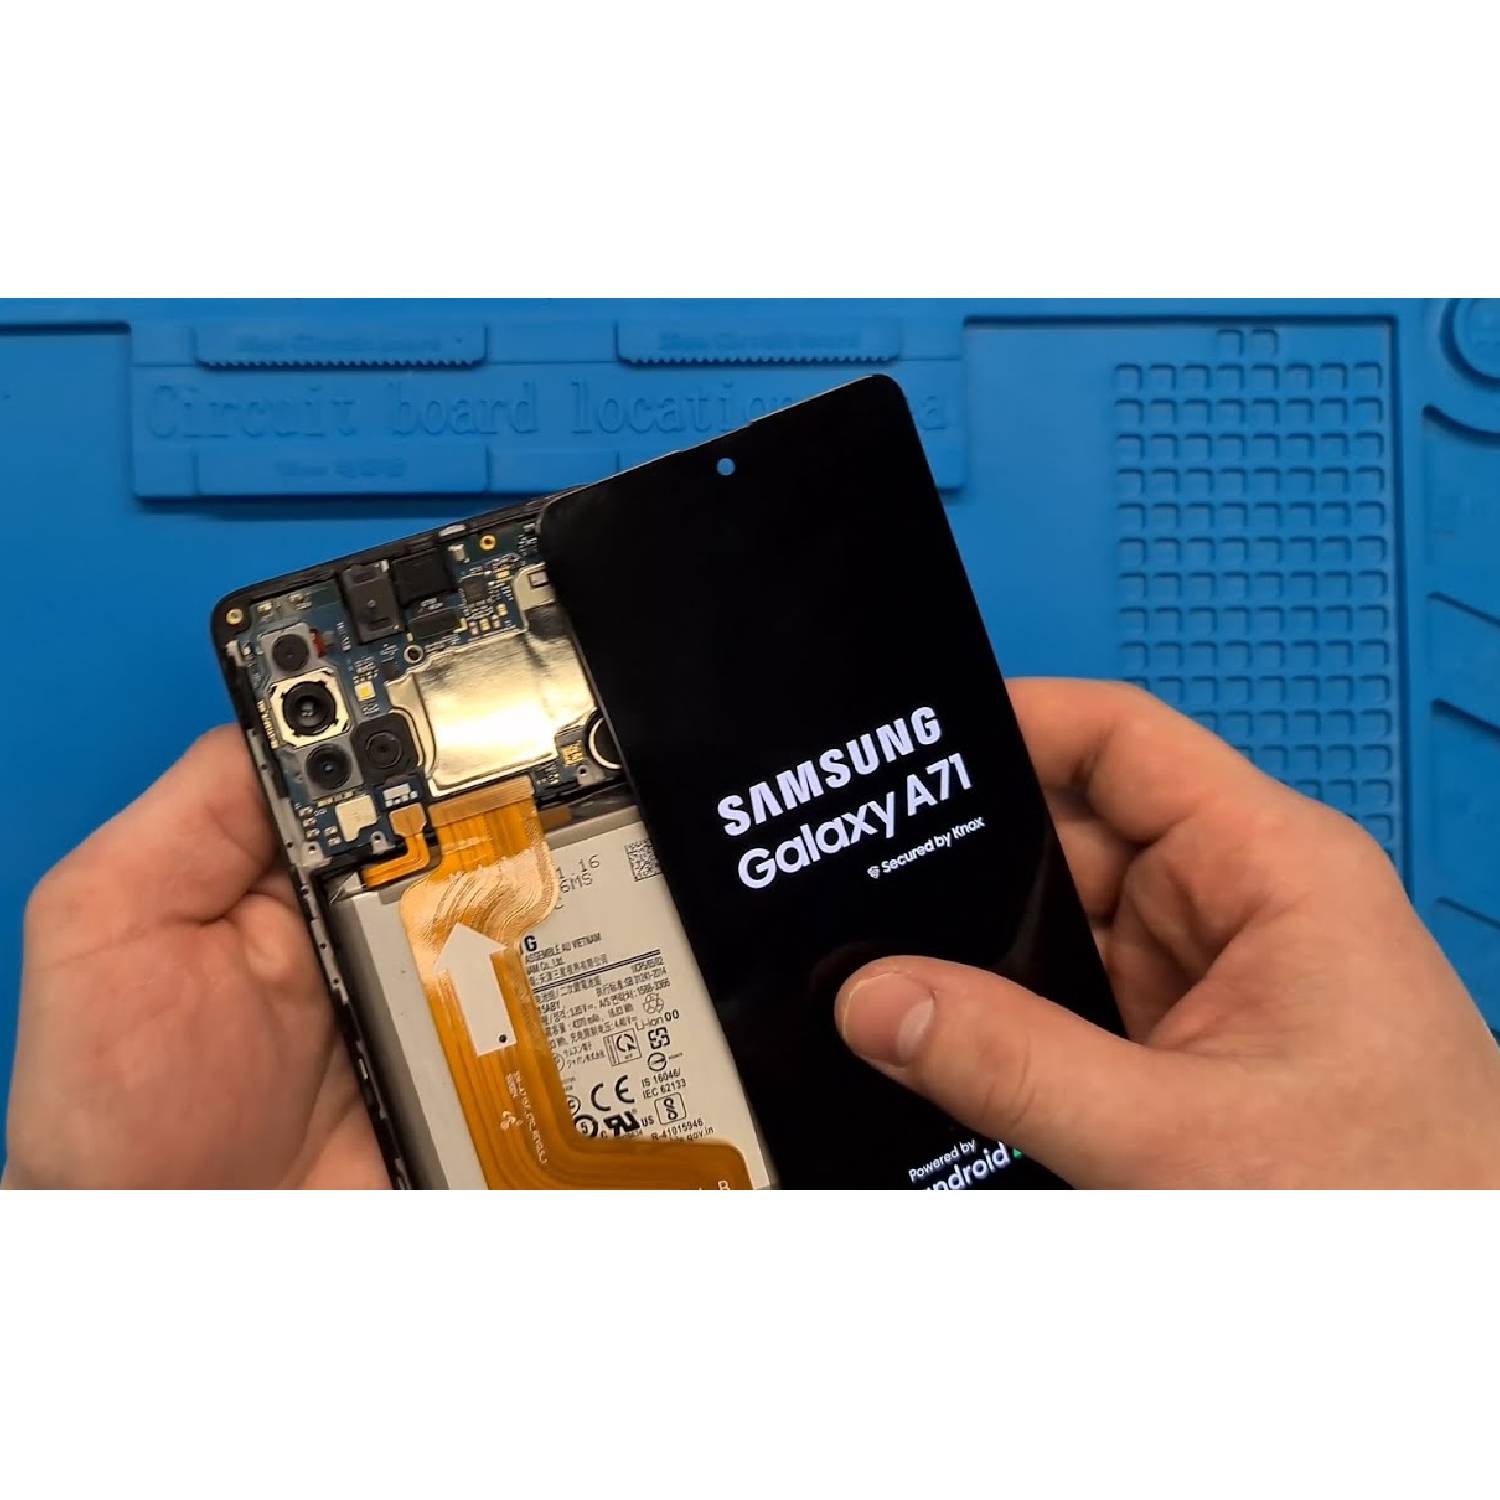 Samsung Galaxy a71 repair